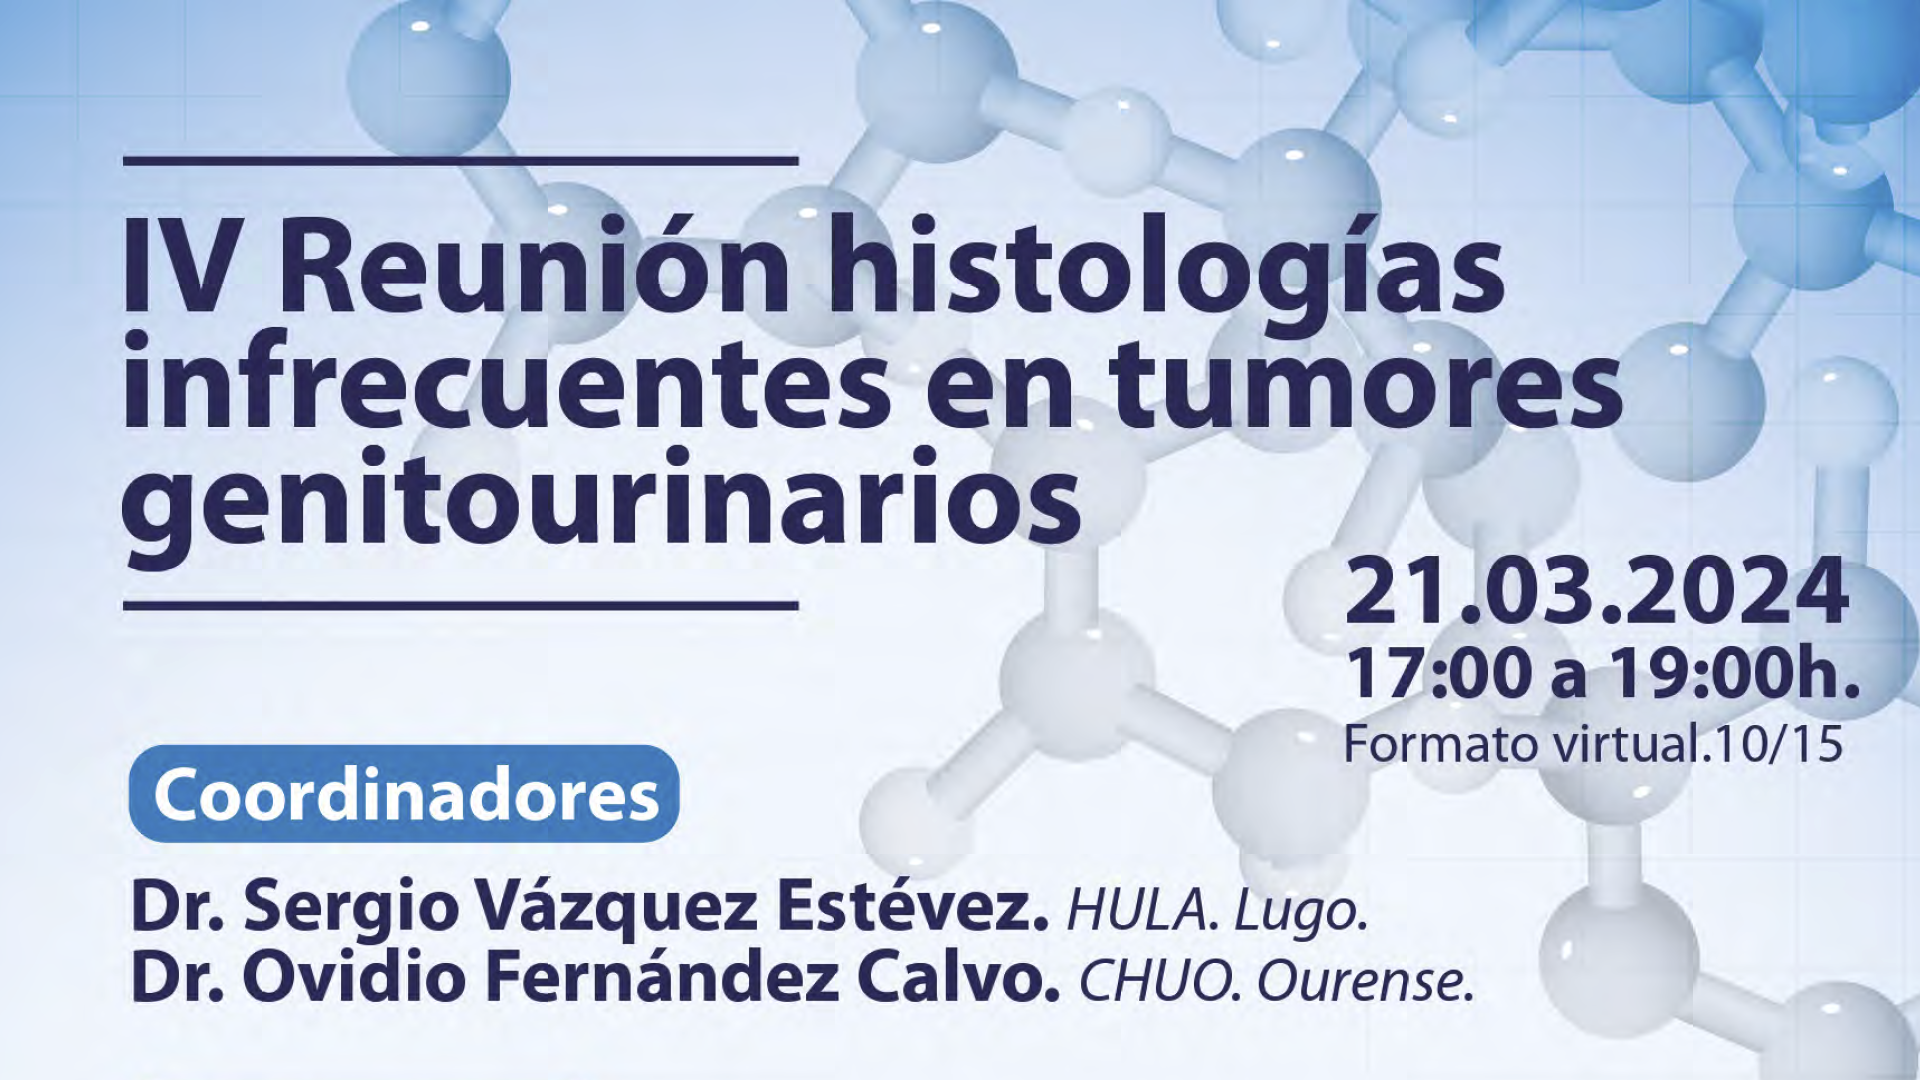 IV Reunión histologías infrecuentes en tumores genitourinarios